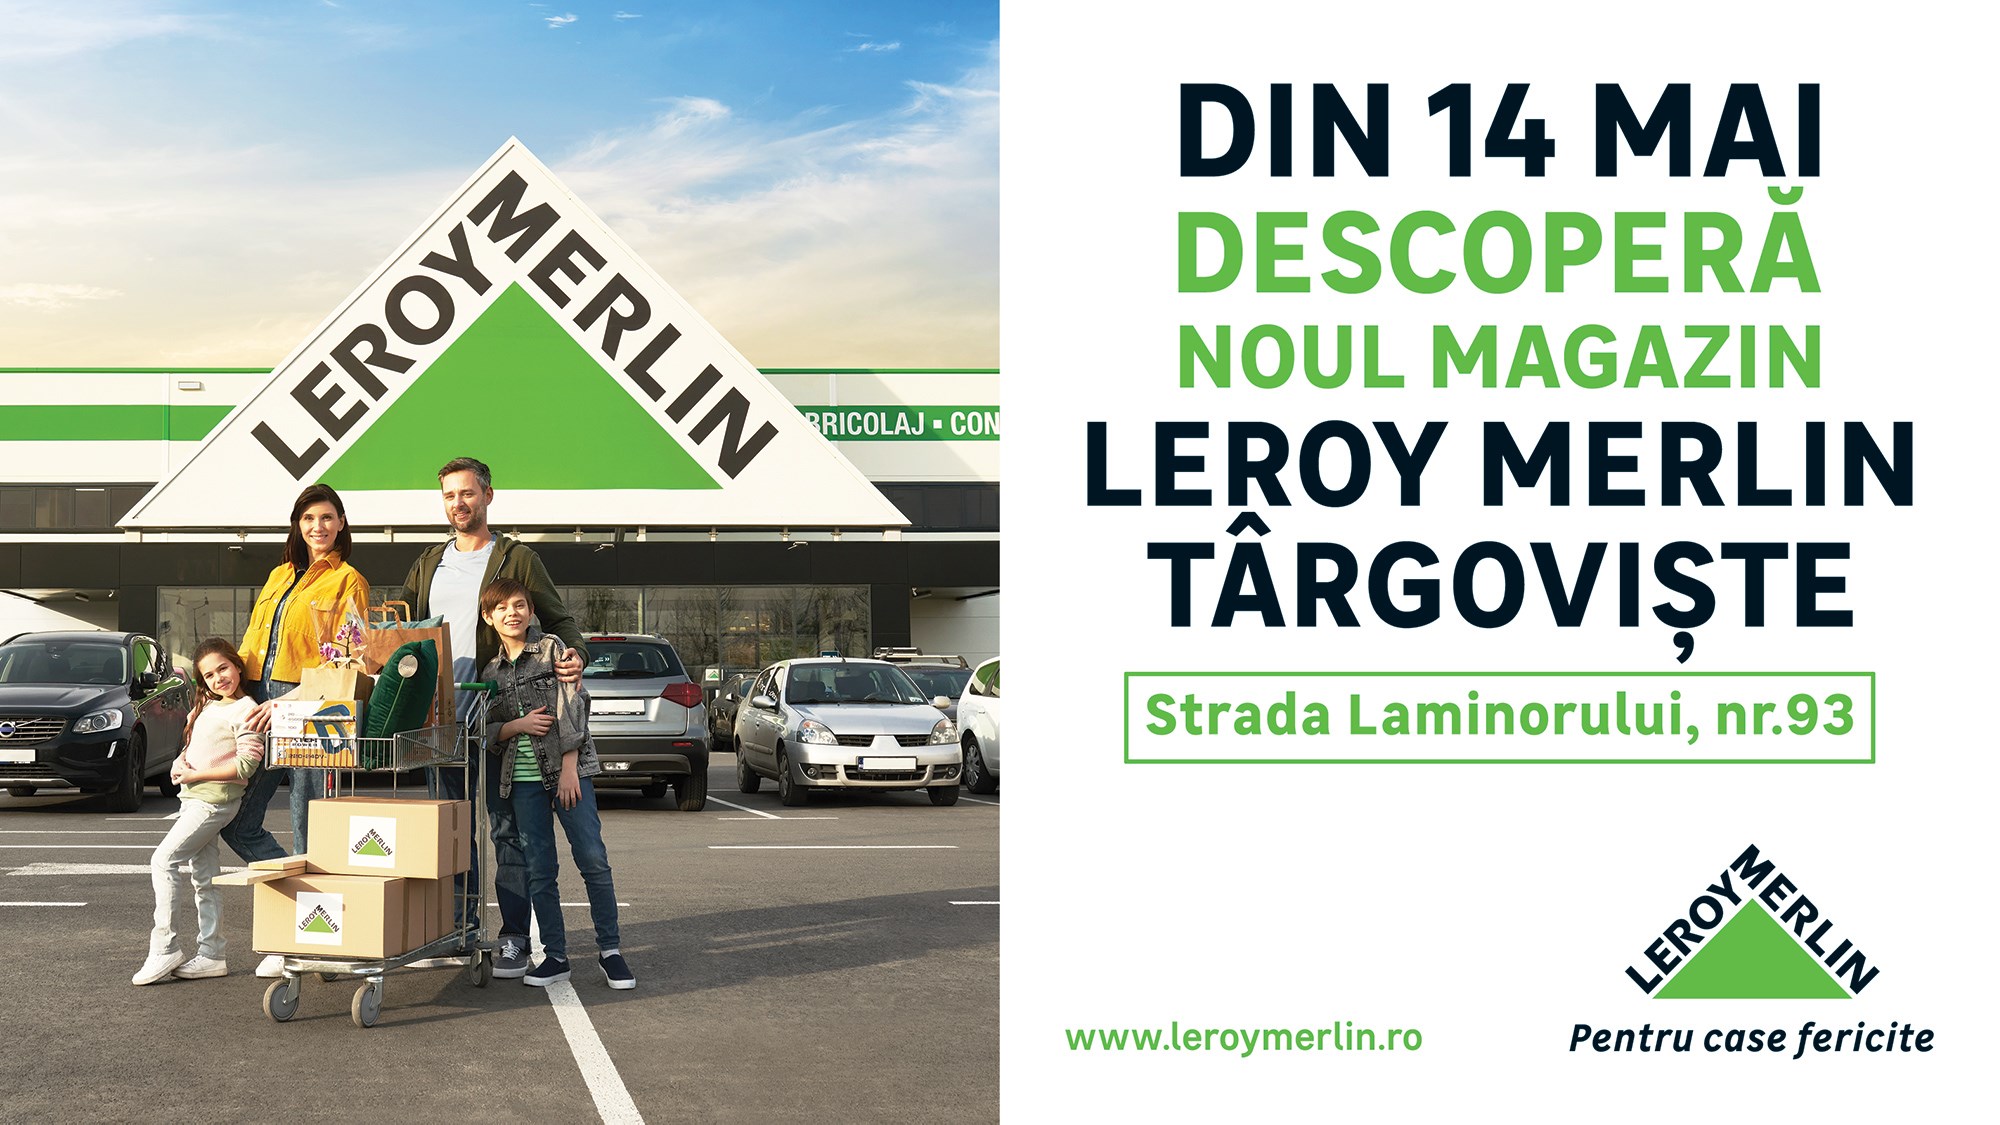 Leroy Merlin deschide mâine, 14 mai, magazinul din Târgoviște. 5 motive pentru care poate deveni magazinul tău preferat de bricolaj